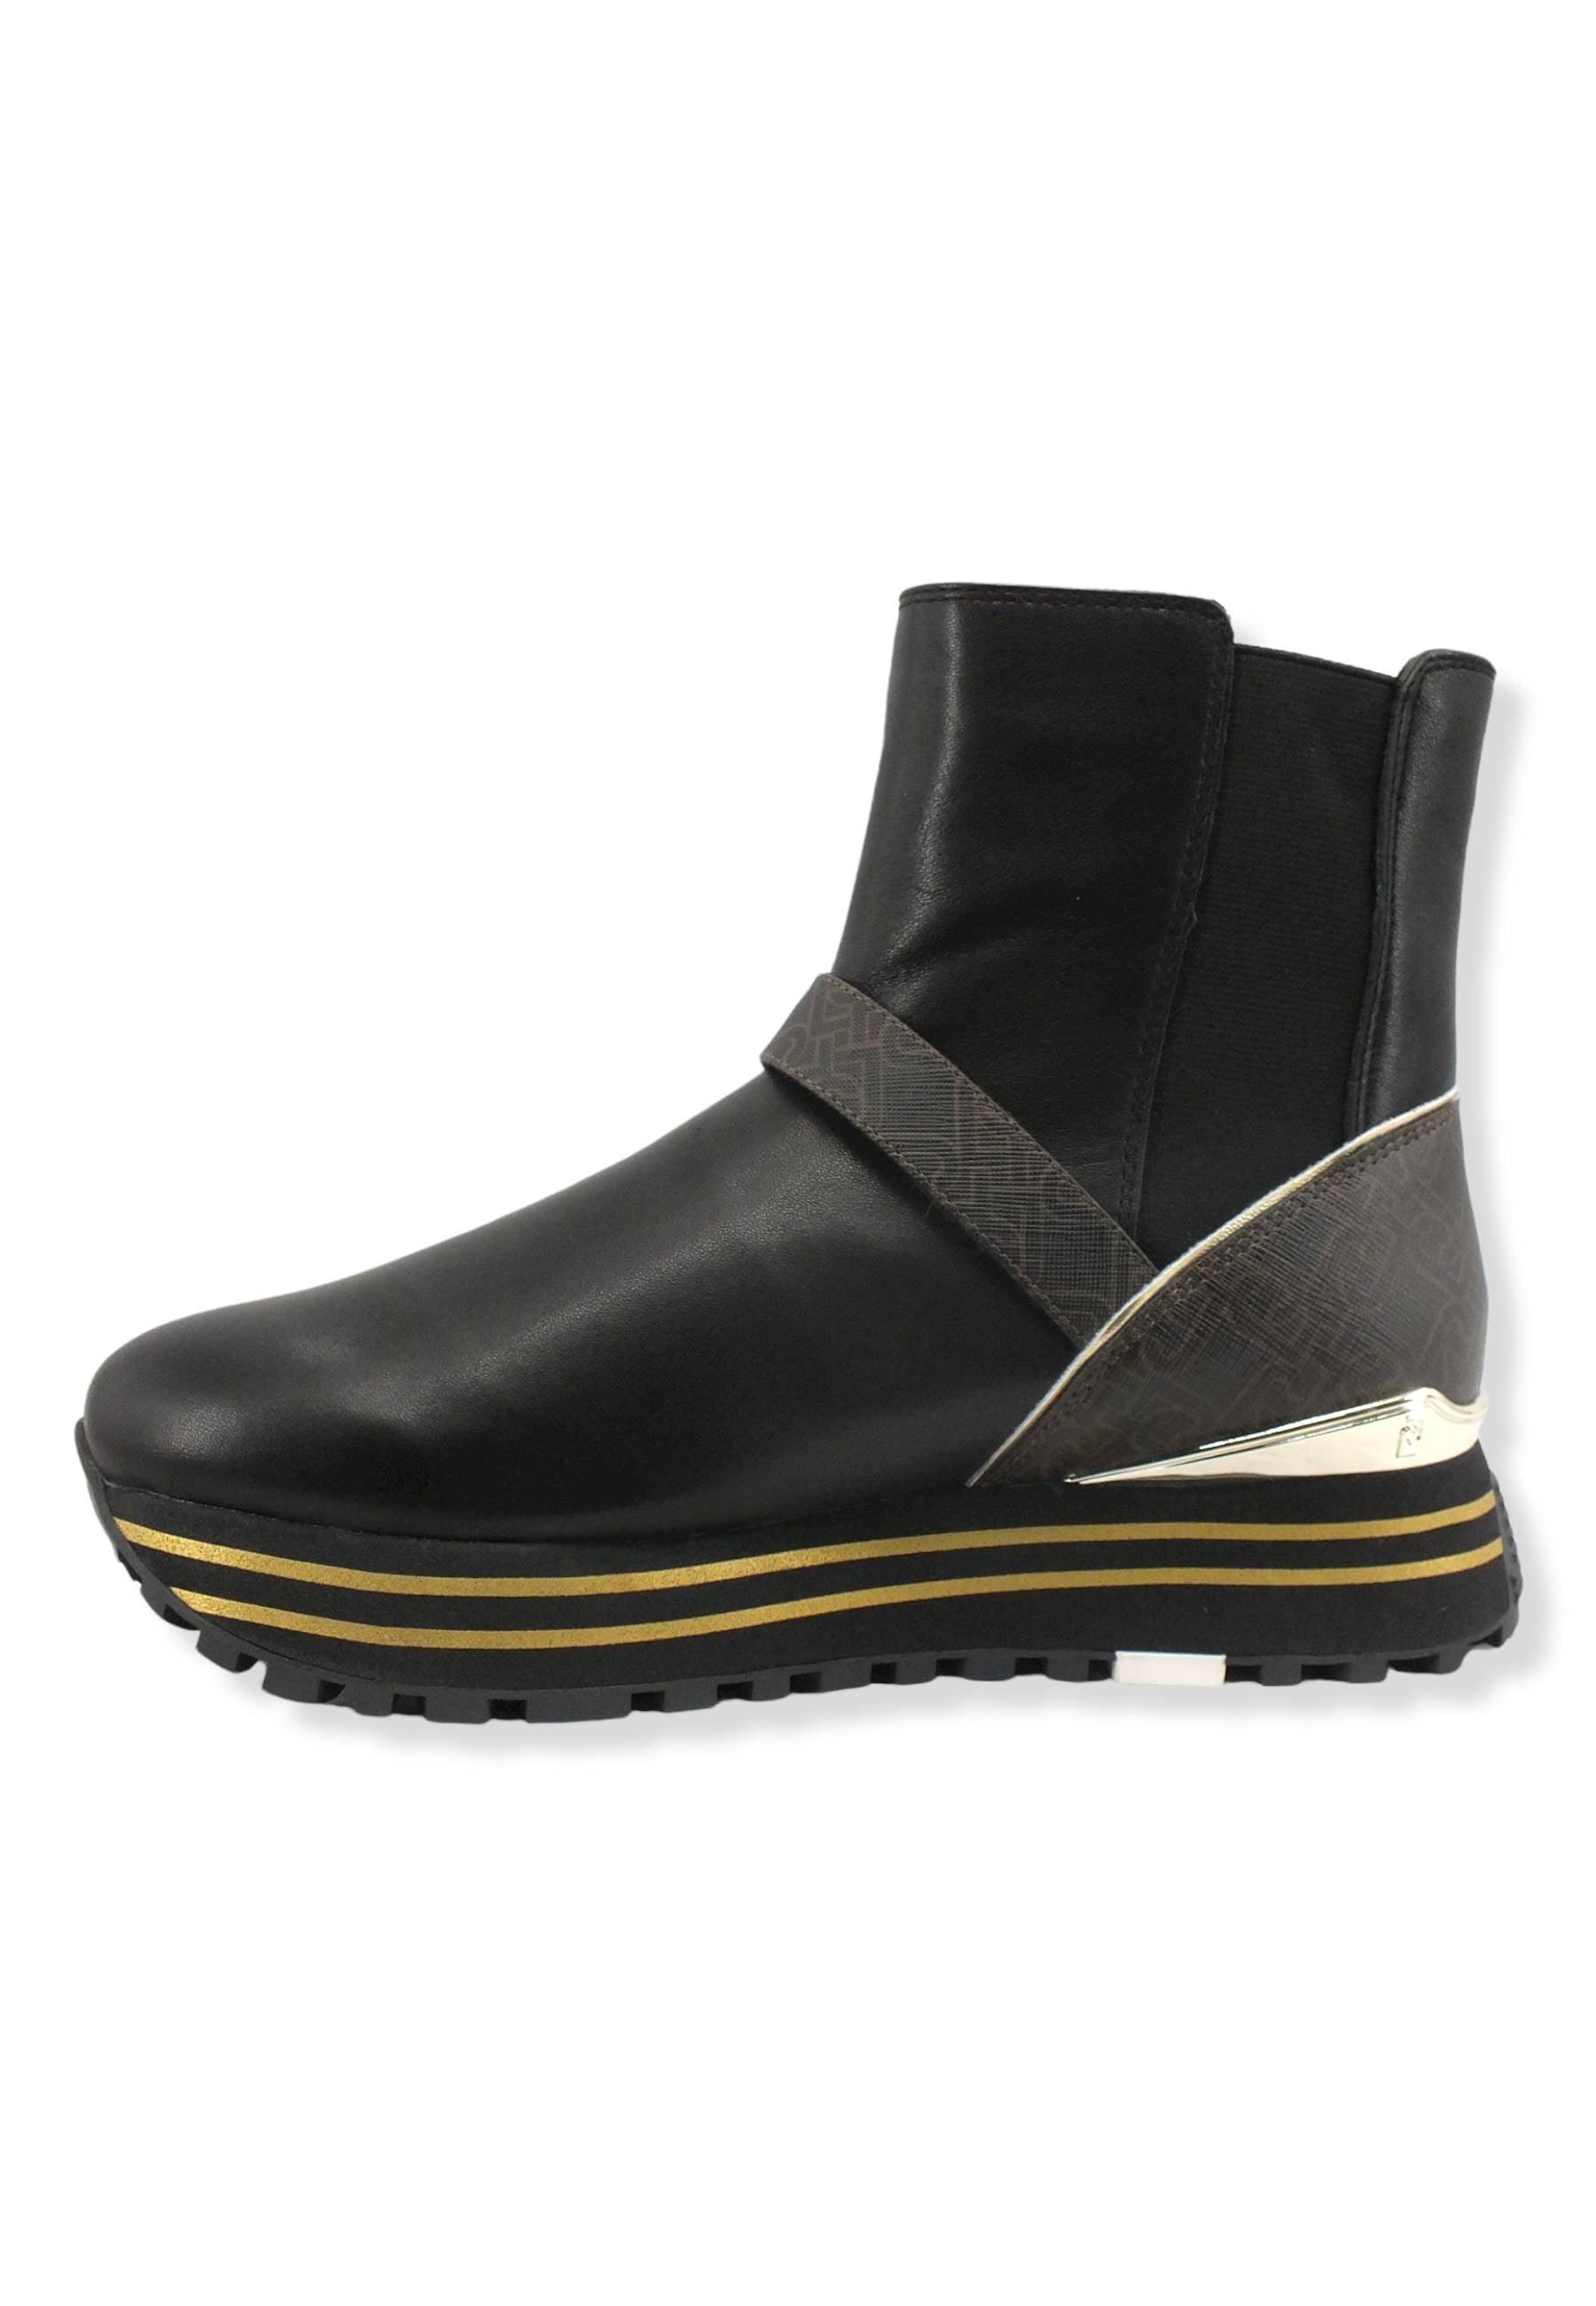 LIU JO Maxi Wonder 49 Sock Sneaker Donna Black Brown BF2111PX141 - Sandrini Calzature e Abbigliamento